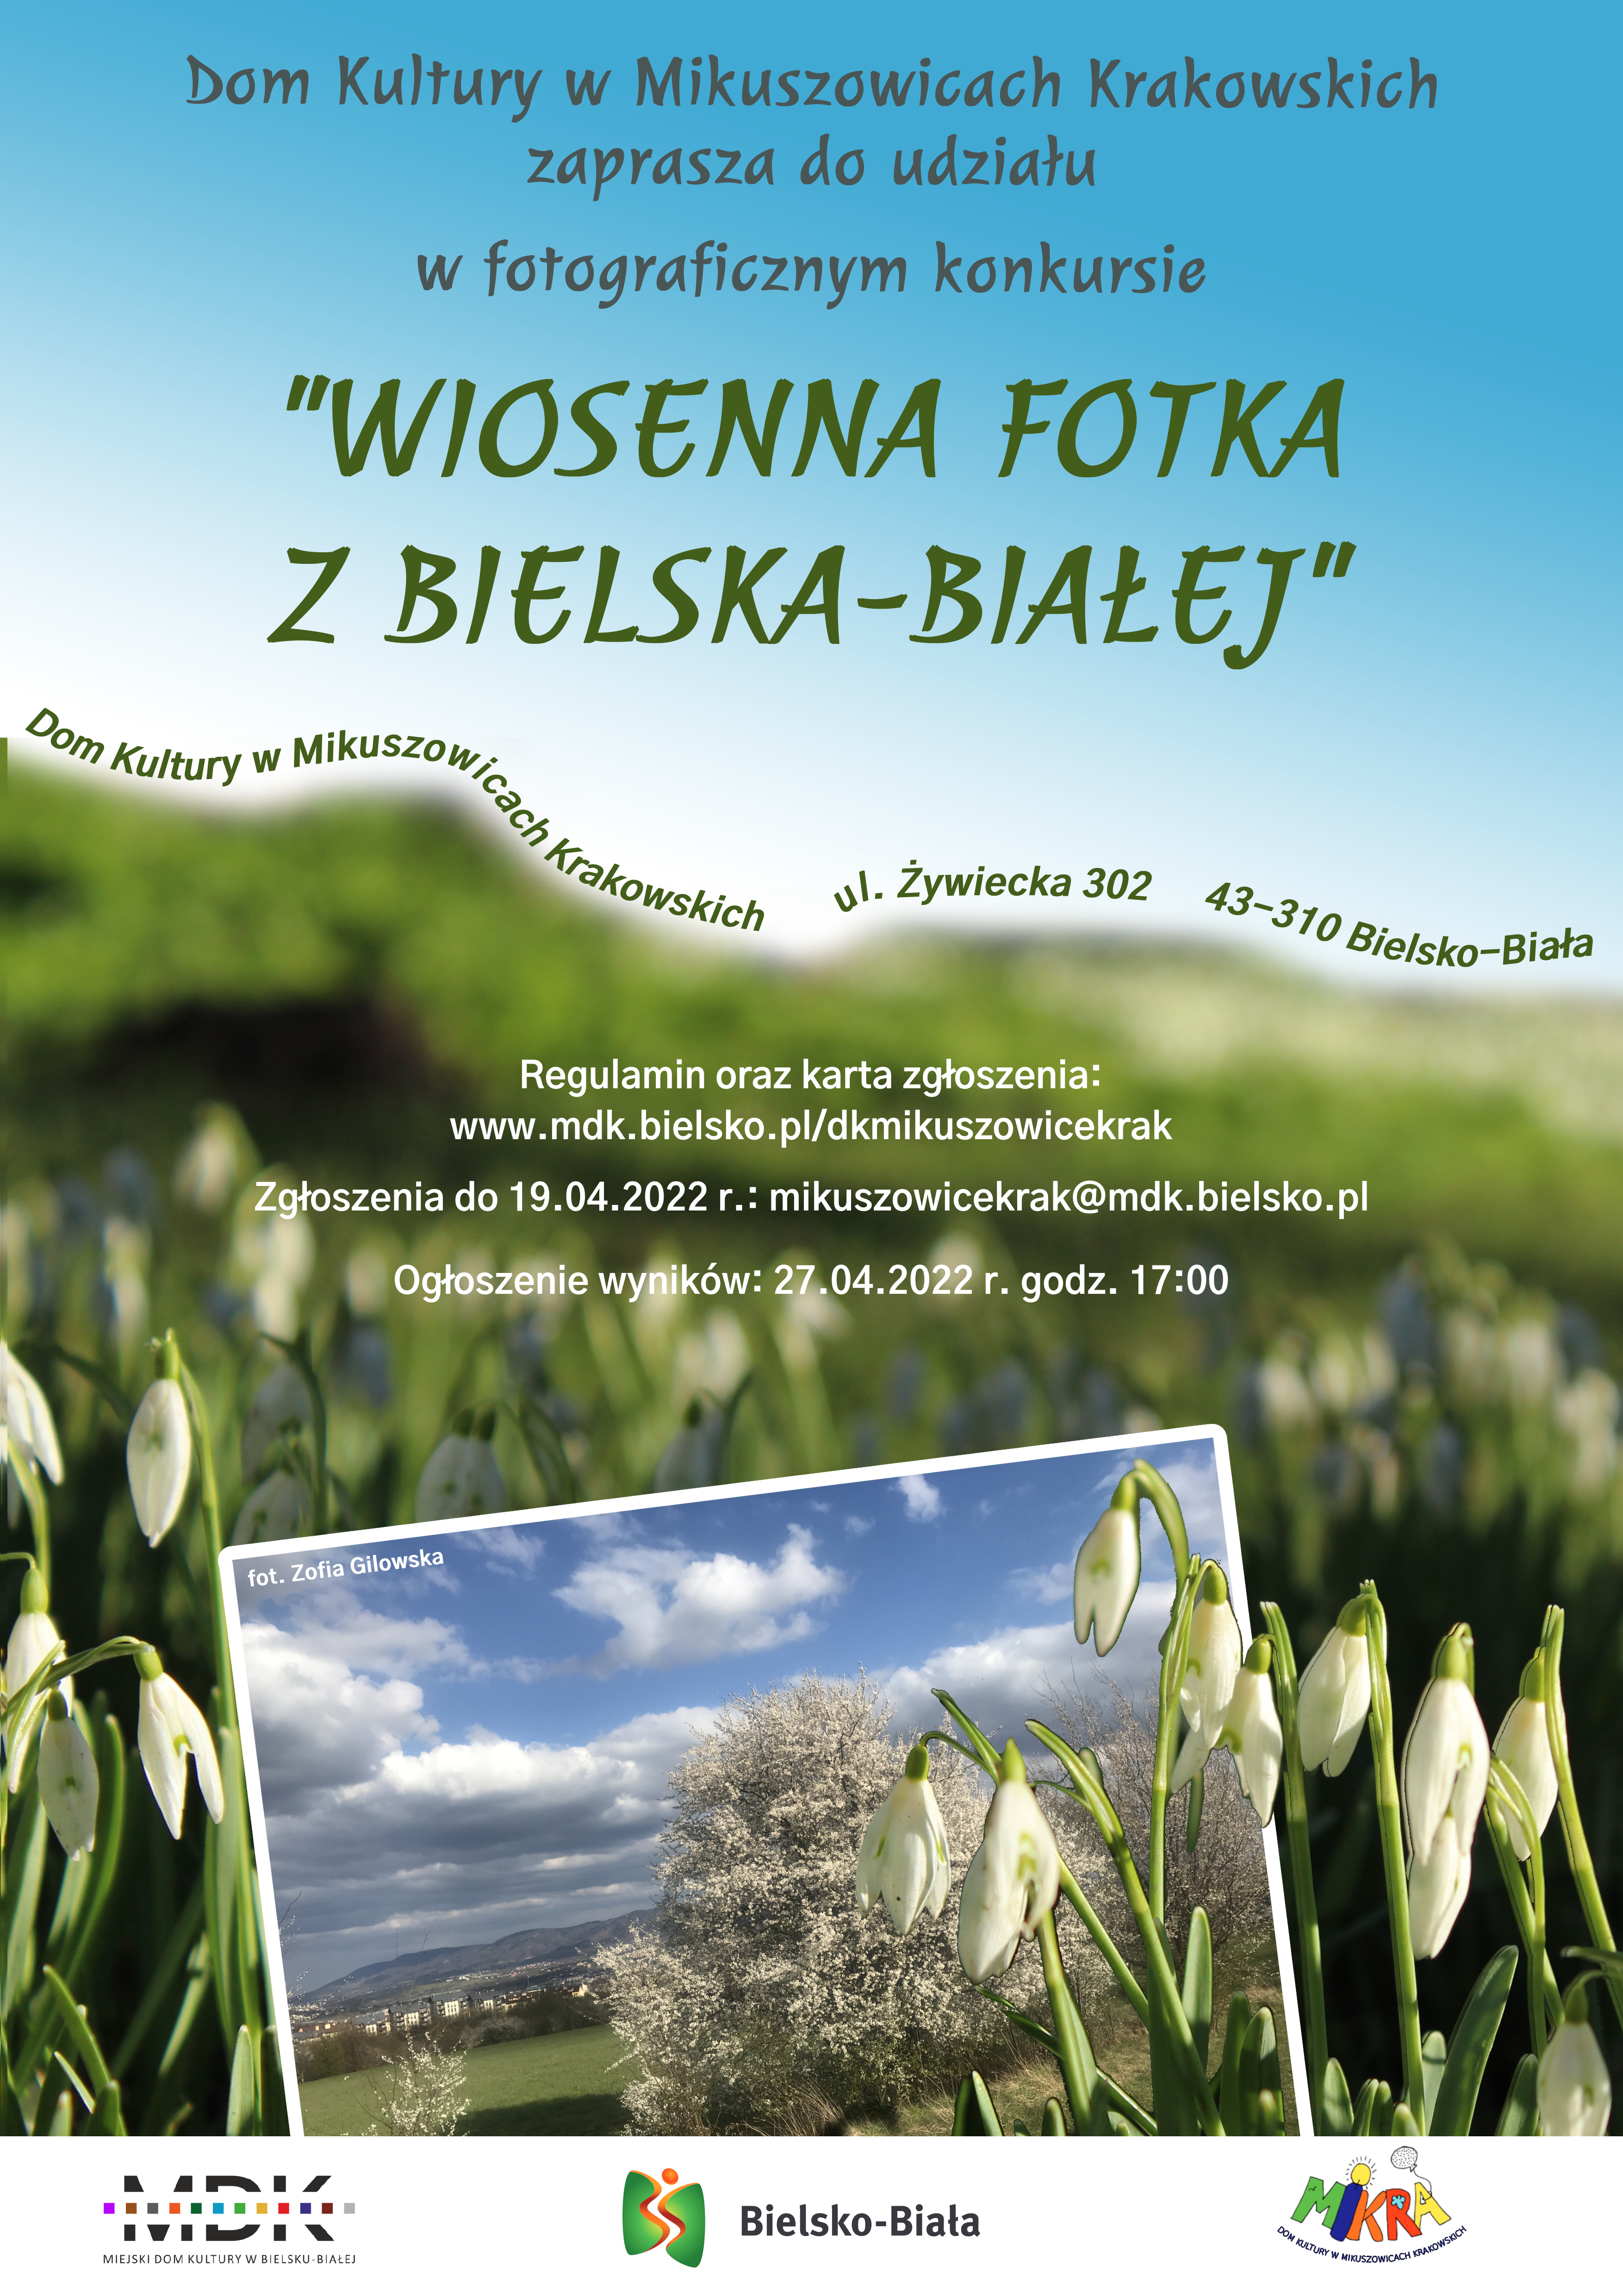 Fotografie wraz z wypełnioną kartą zgłoszenia można przesyłać do 19 kwietnia br. na adres mikuszowicekrak@mdk.bielsko.pl